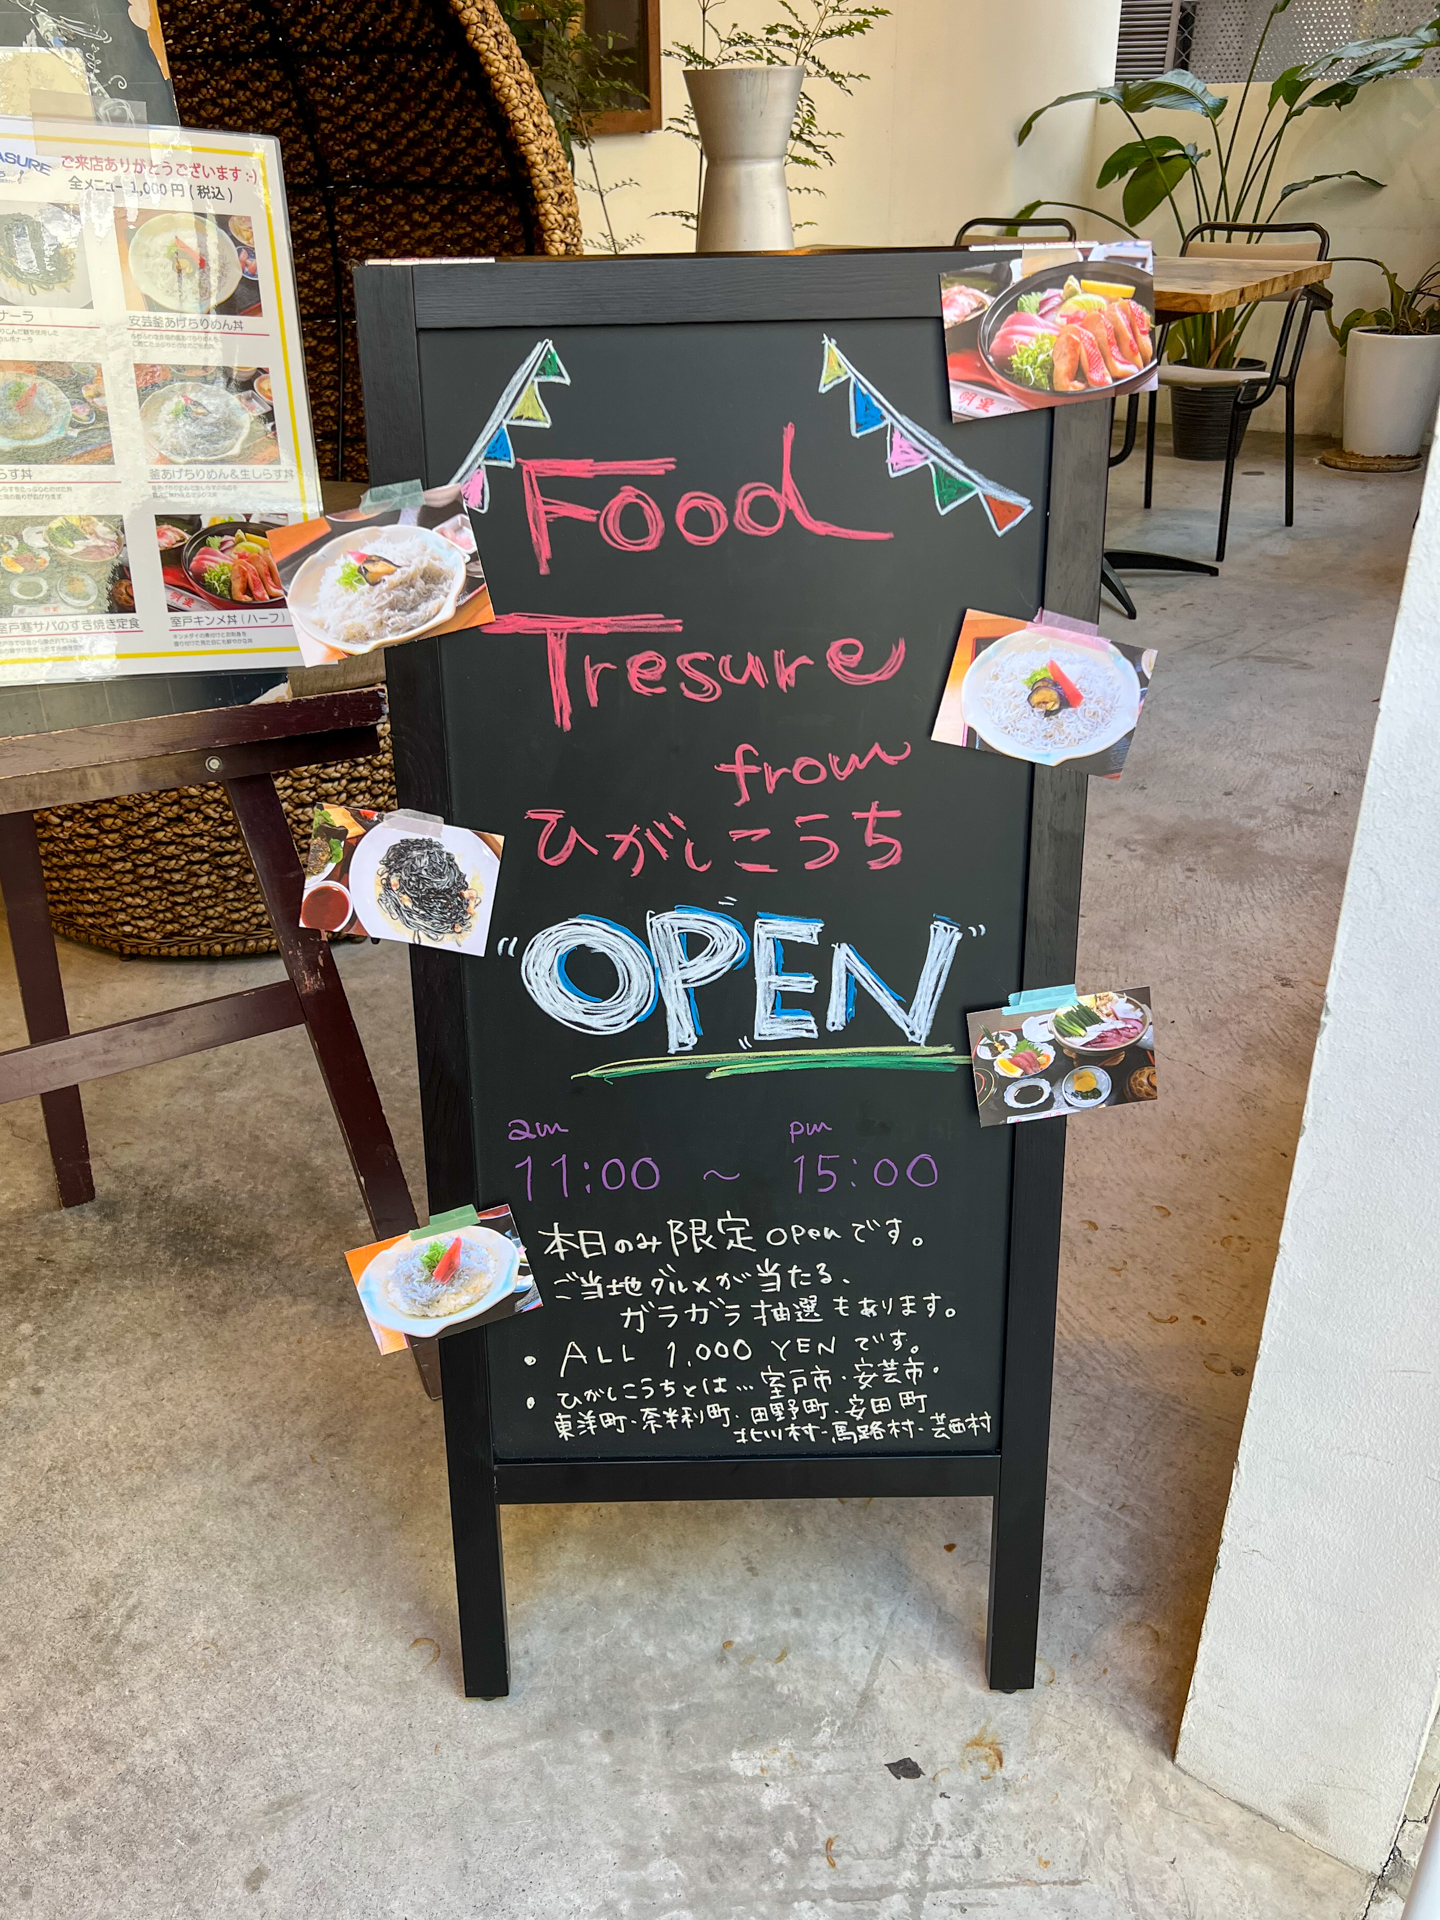 「FOOD TREASURE from ひがしこうち」の看板